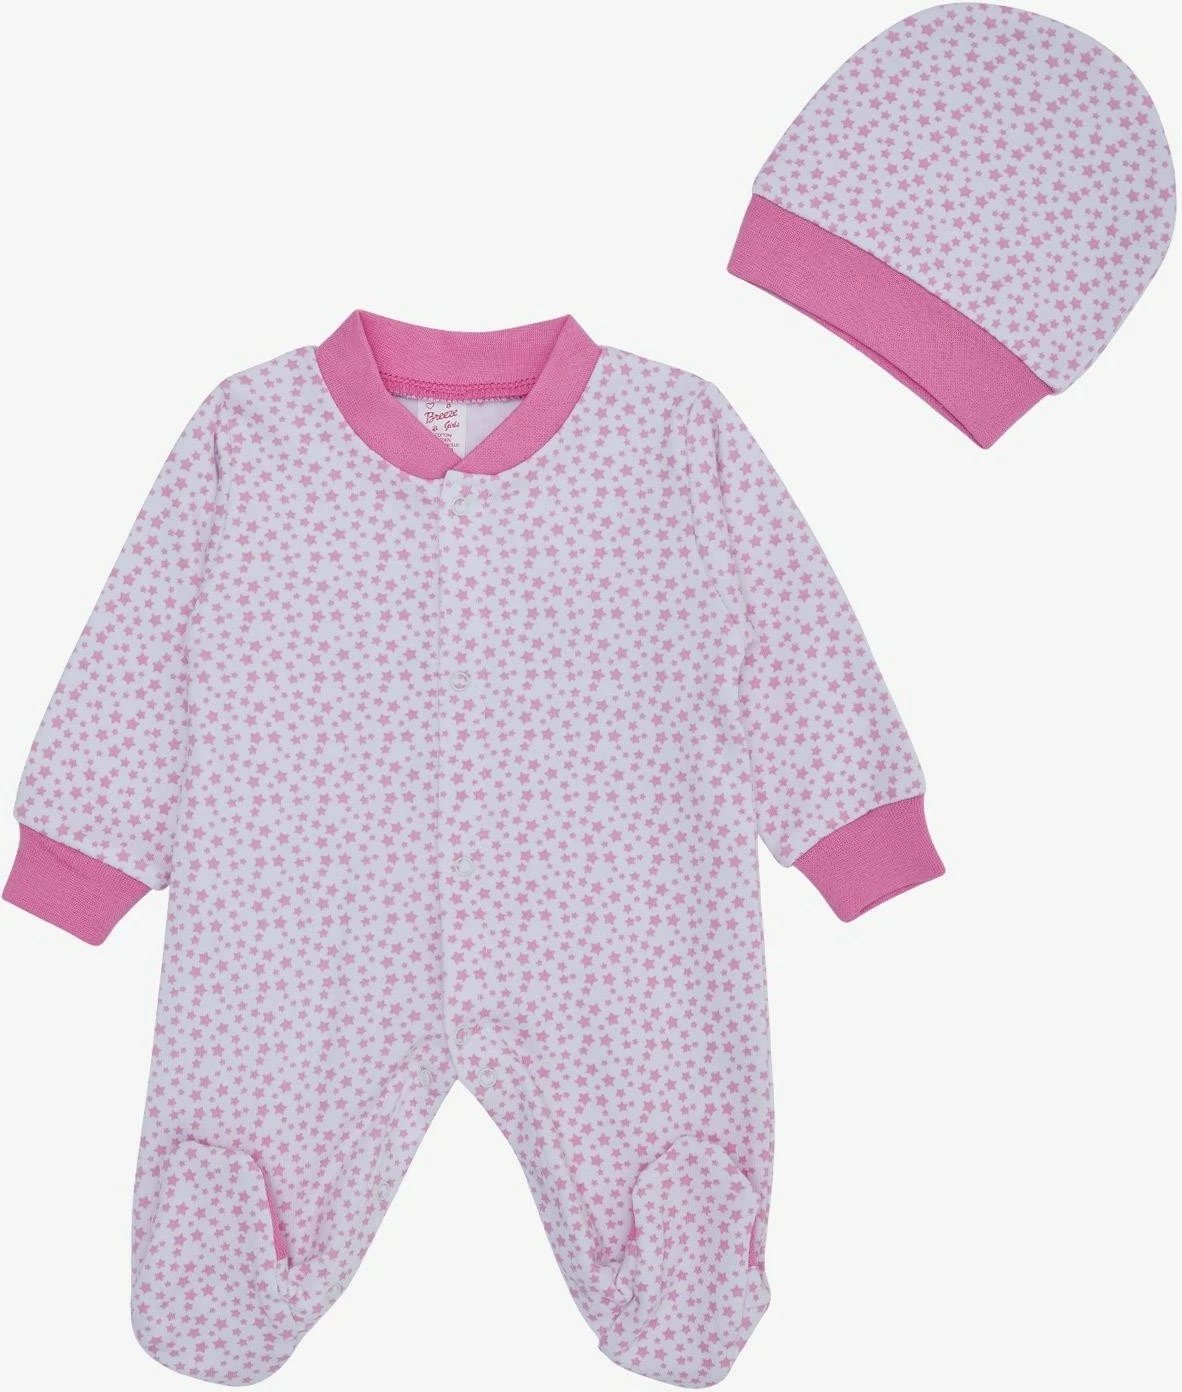 Kominoshe për bebe vajza Breeze, me model zemra, 0-6 muaj, ngjyrë krem